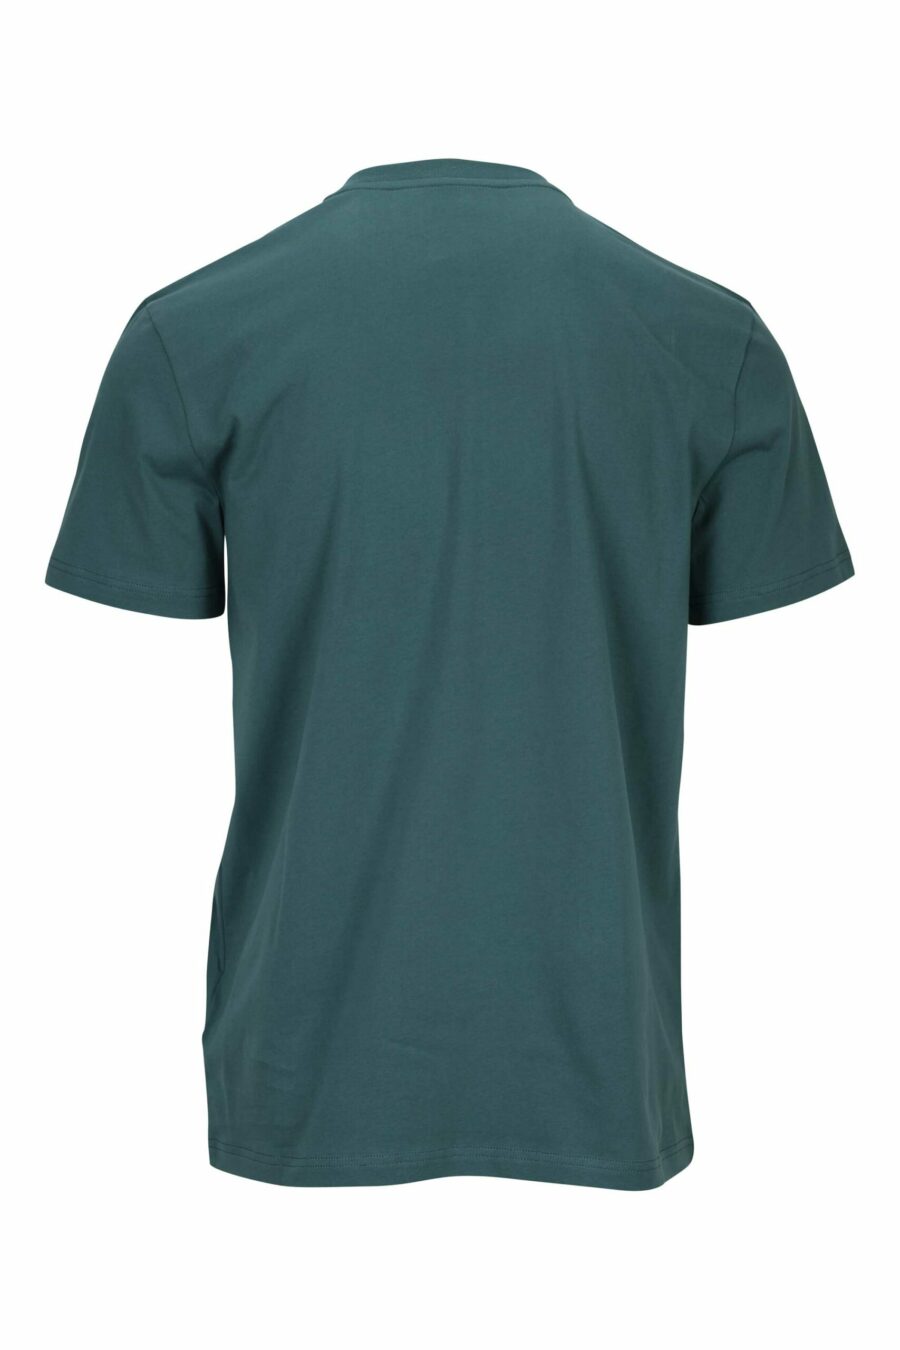 T-shirt vert en coton bio avec maxilogue noir classique - 667113391533 1 scaled